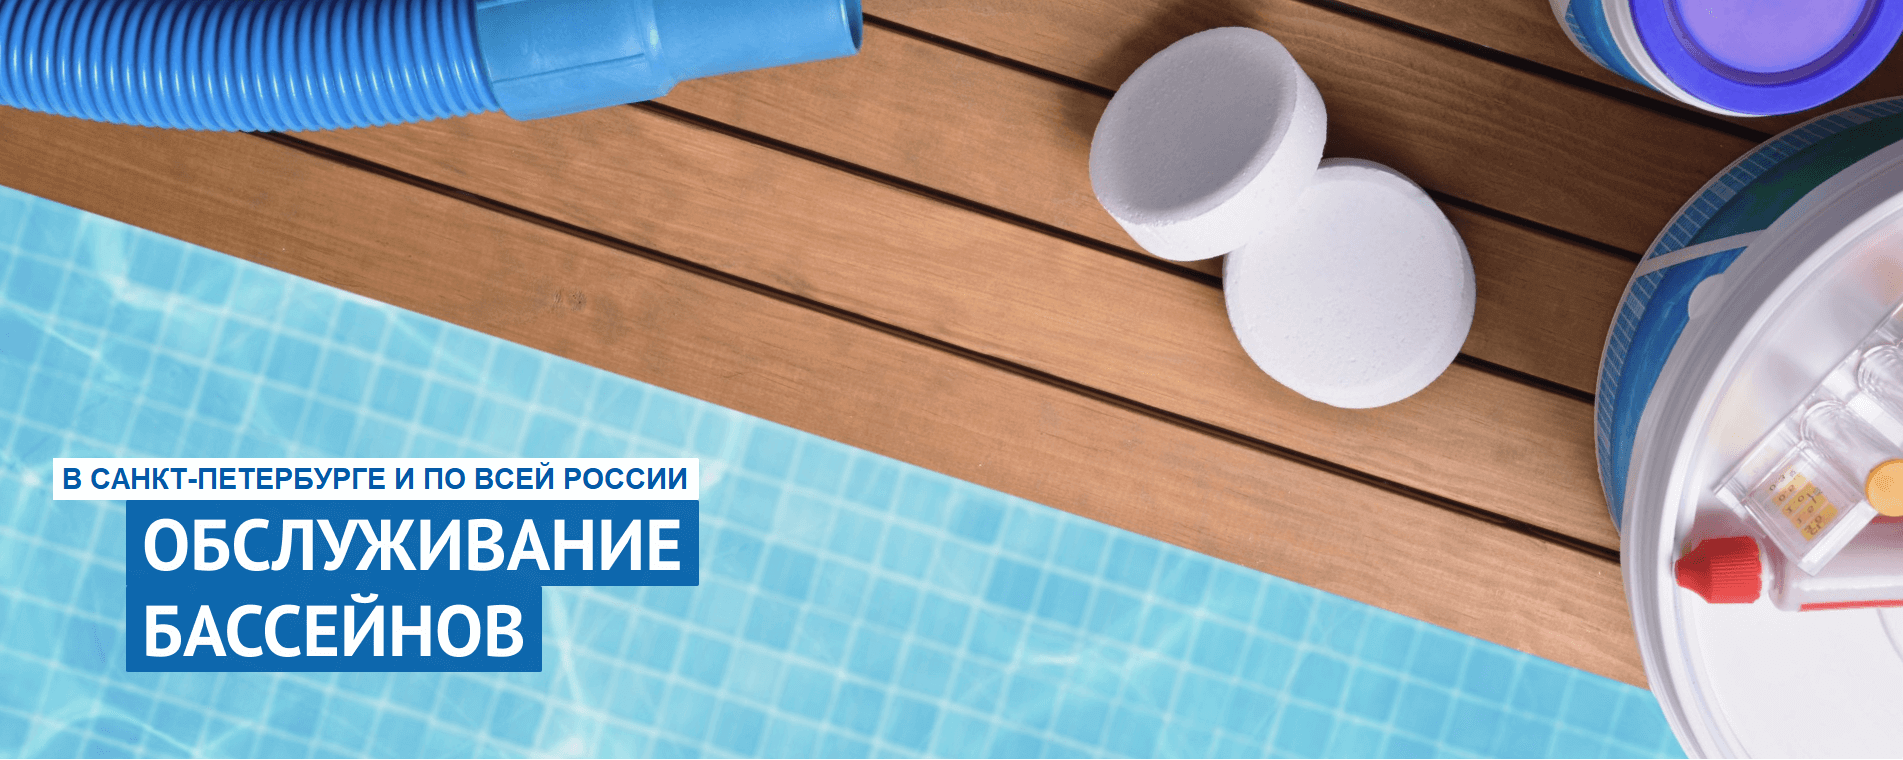 slide_three_2 Строительство бассейнов под ключ в СПб | ВанБас